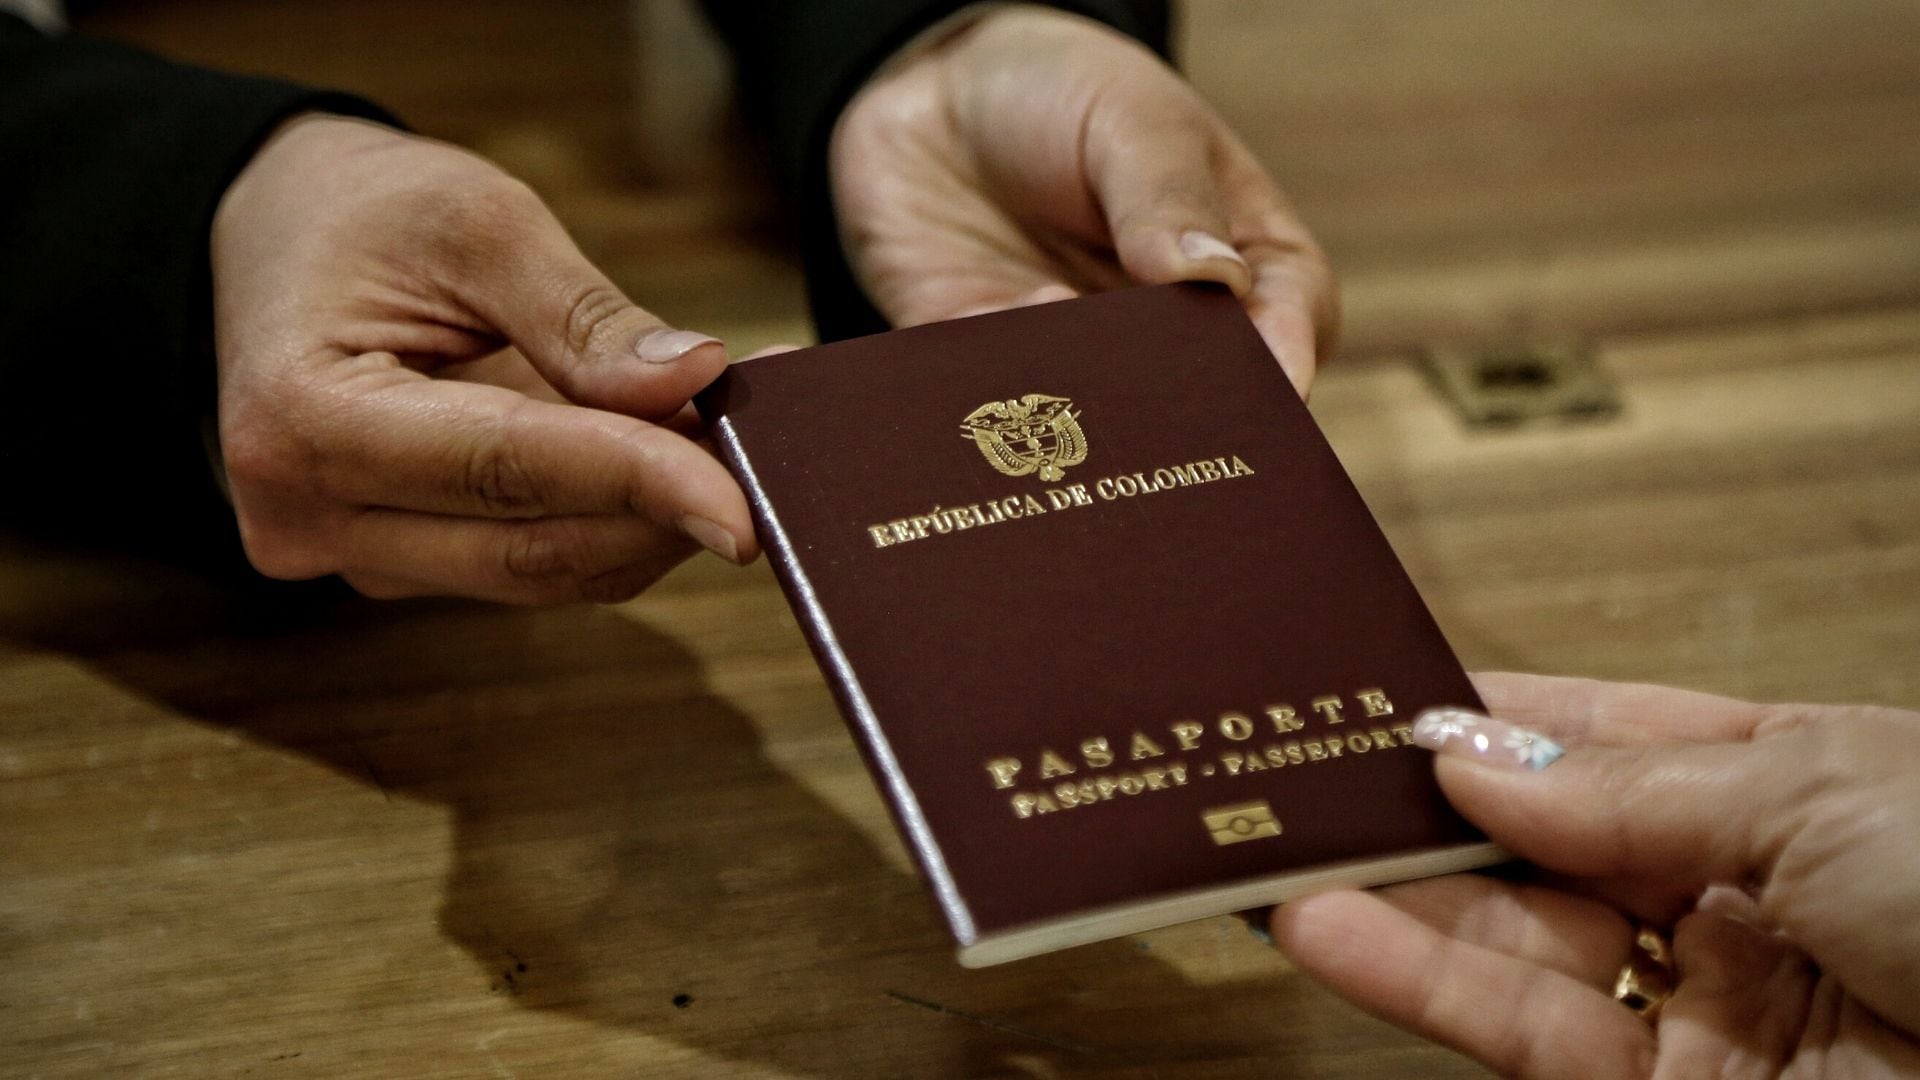 Problemas con los pasaportes: Cancillería ordena urgencia manifiesta y le da responsabilidad a funcionario denunciado